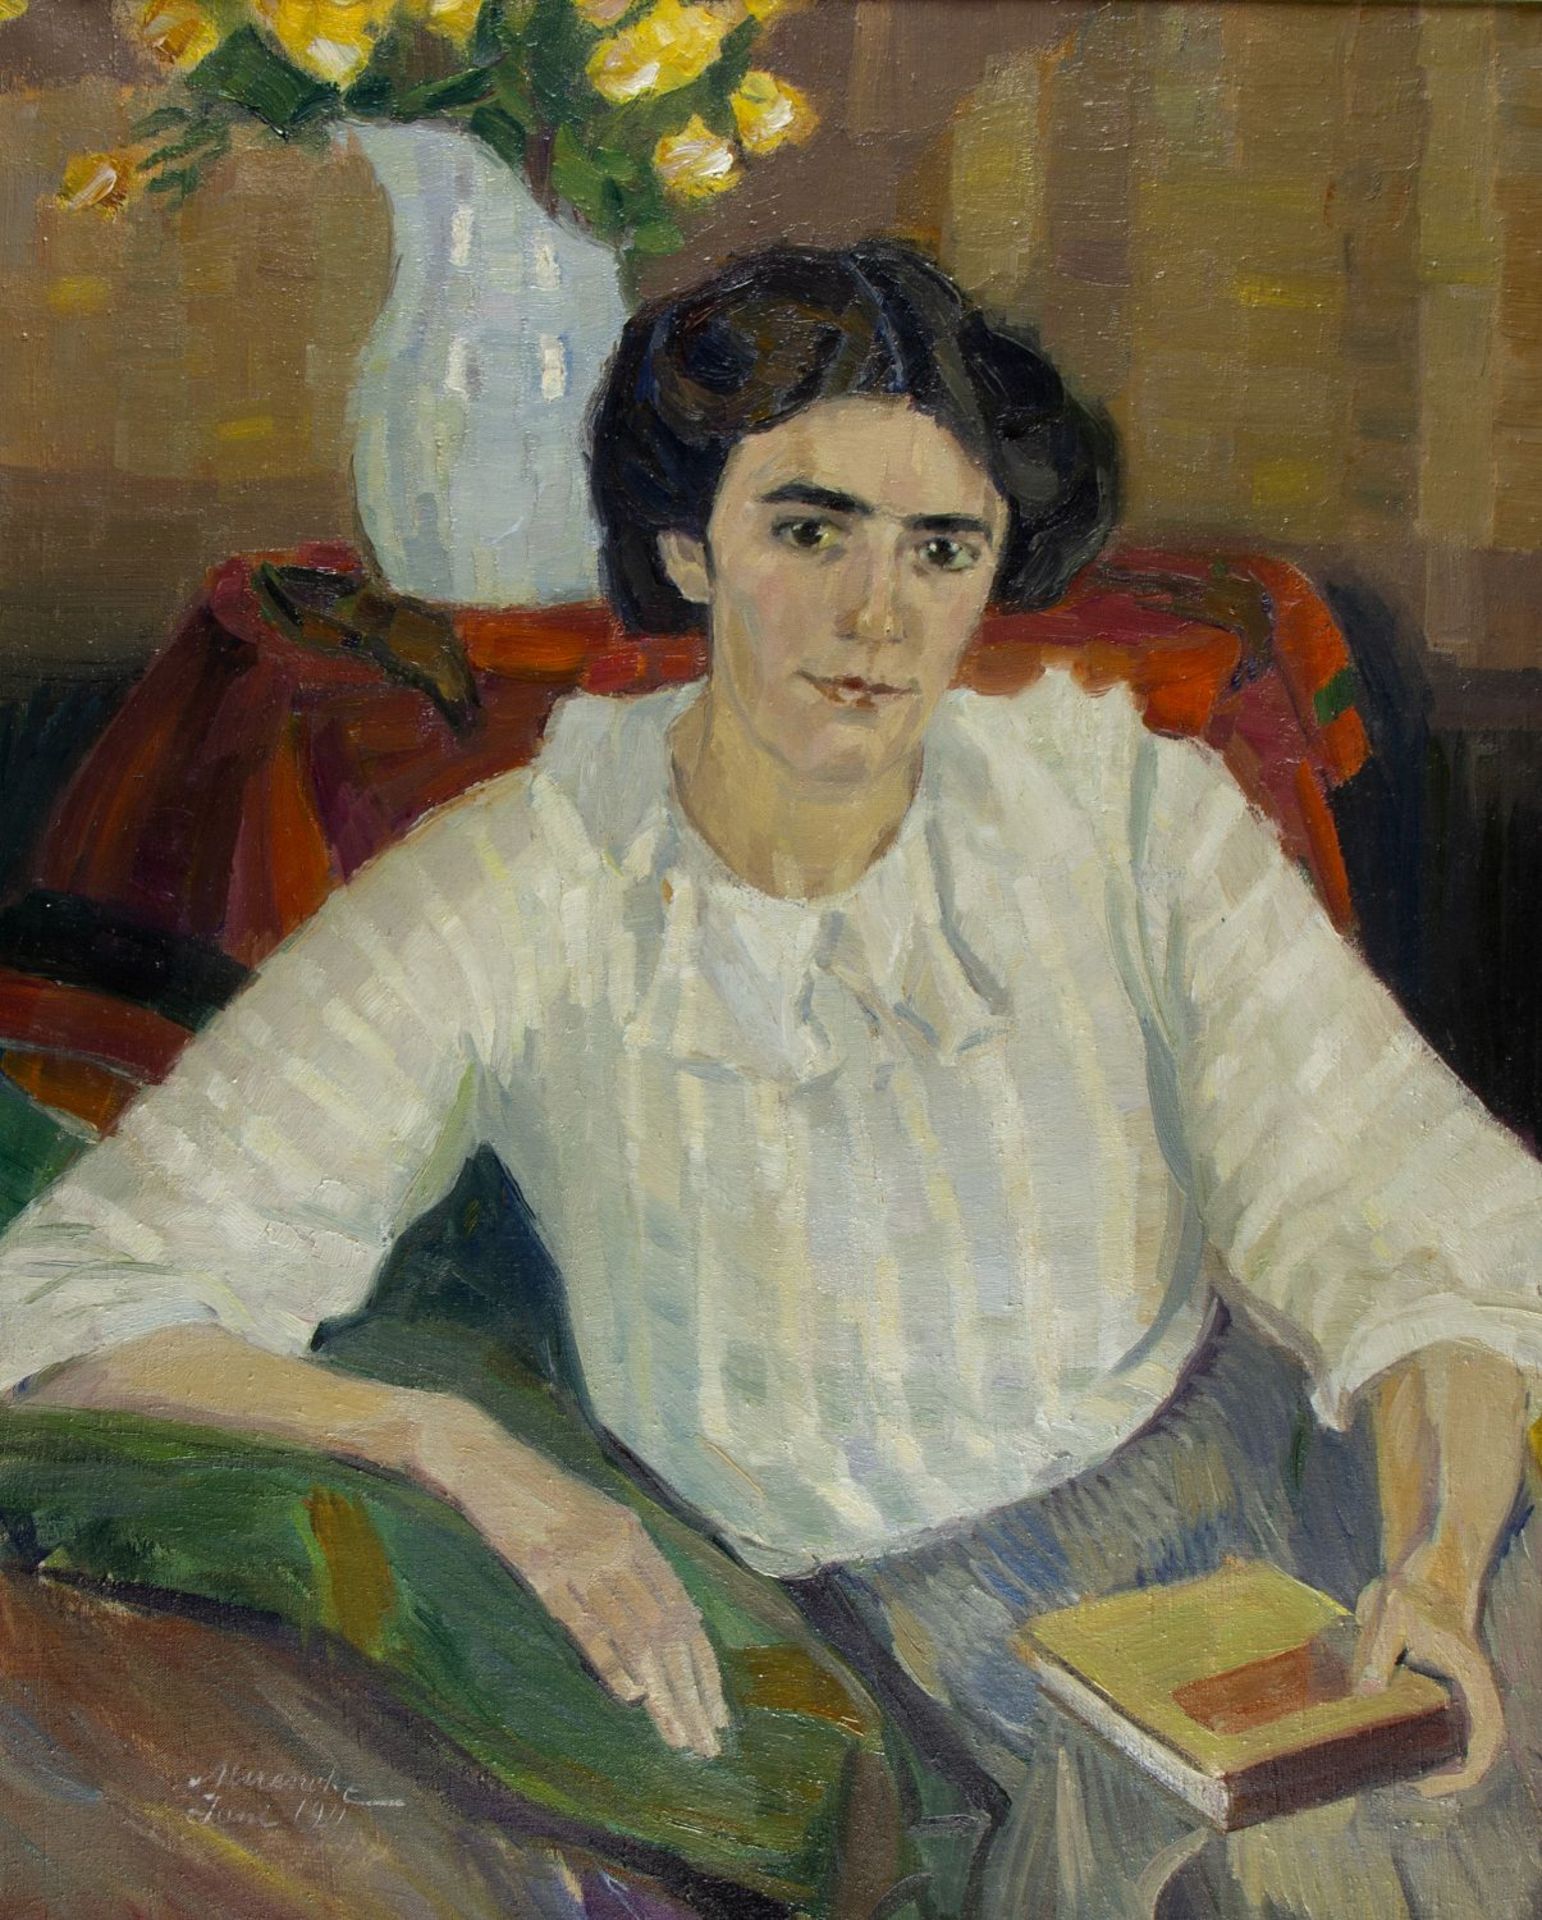 Muencke, Eduard. 1875 - 1954 Portrait einer Dame mit Buch. Öl/Lwd. Sign. und dat. 1911. 93 x 72 cm.